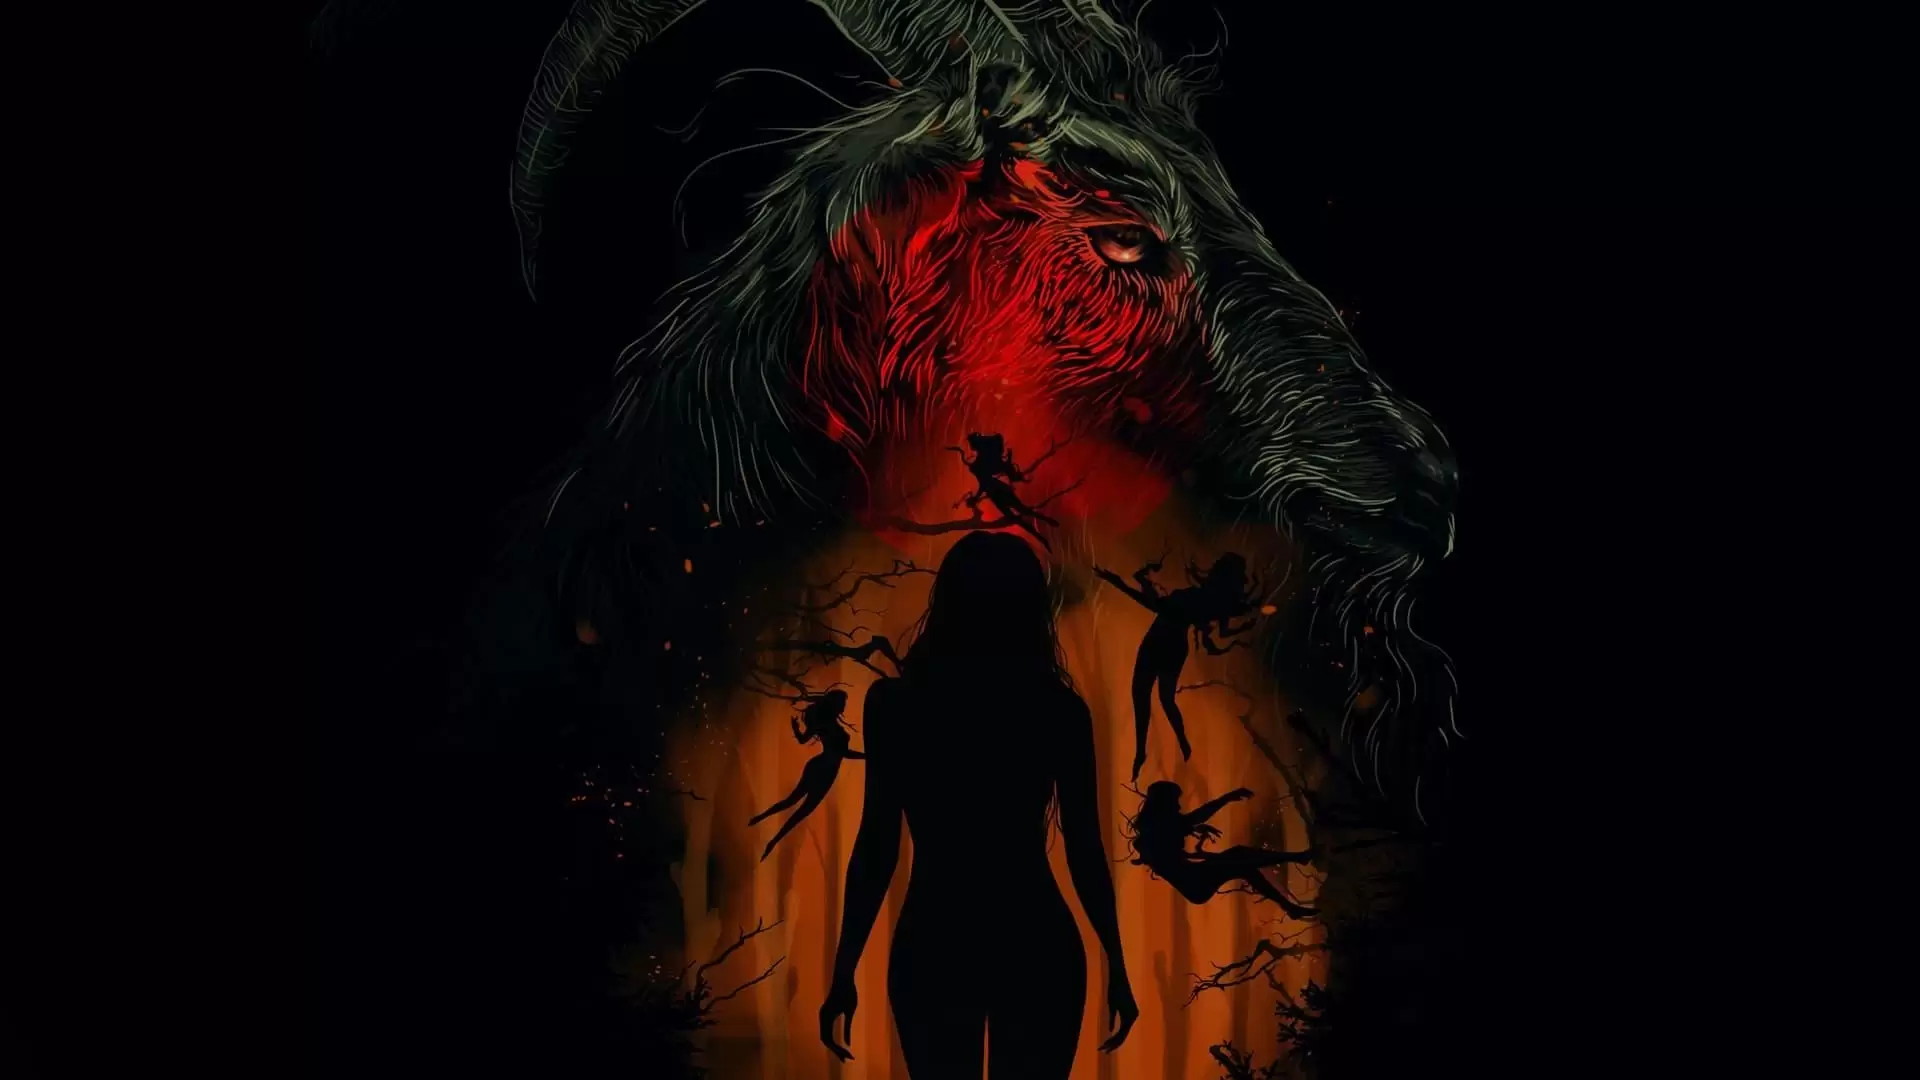 دانلود فیلم The Witch 2015 (جادوگر) با زیرنویس فارسی و تماشای آنلاین